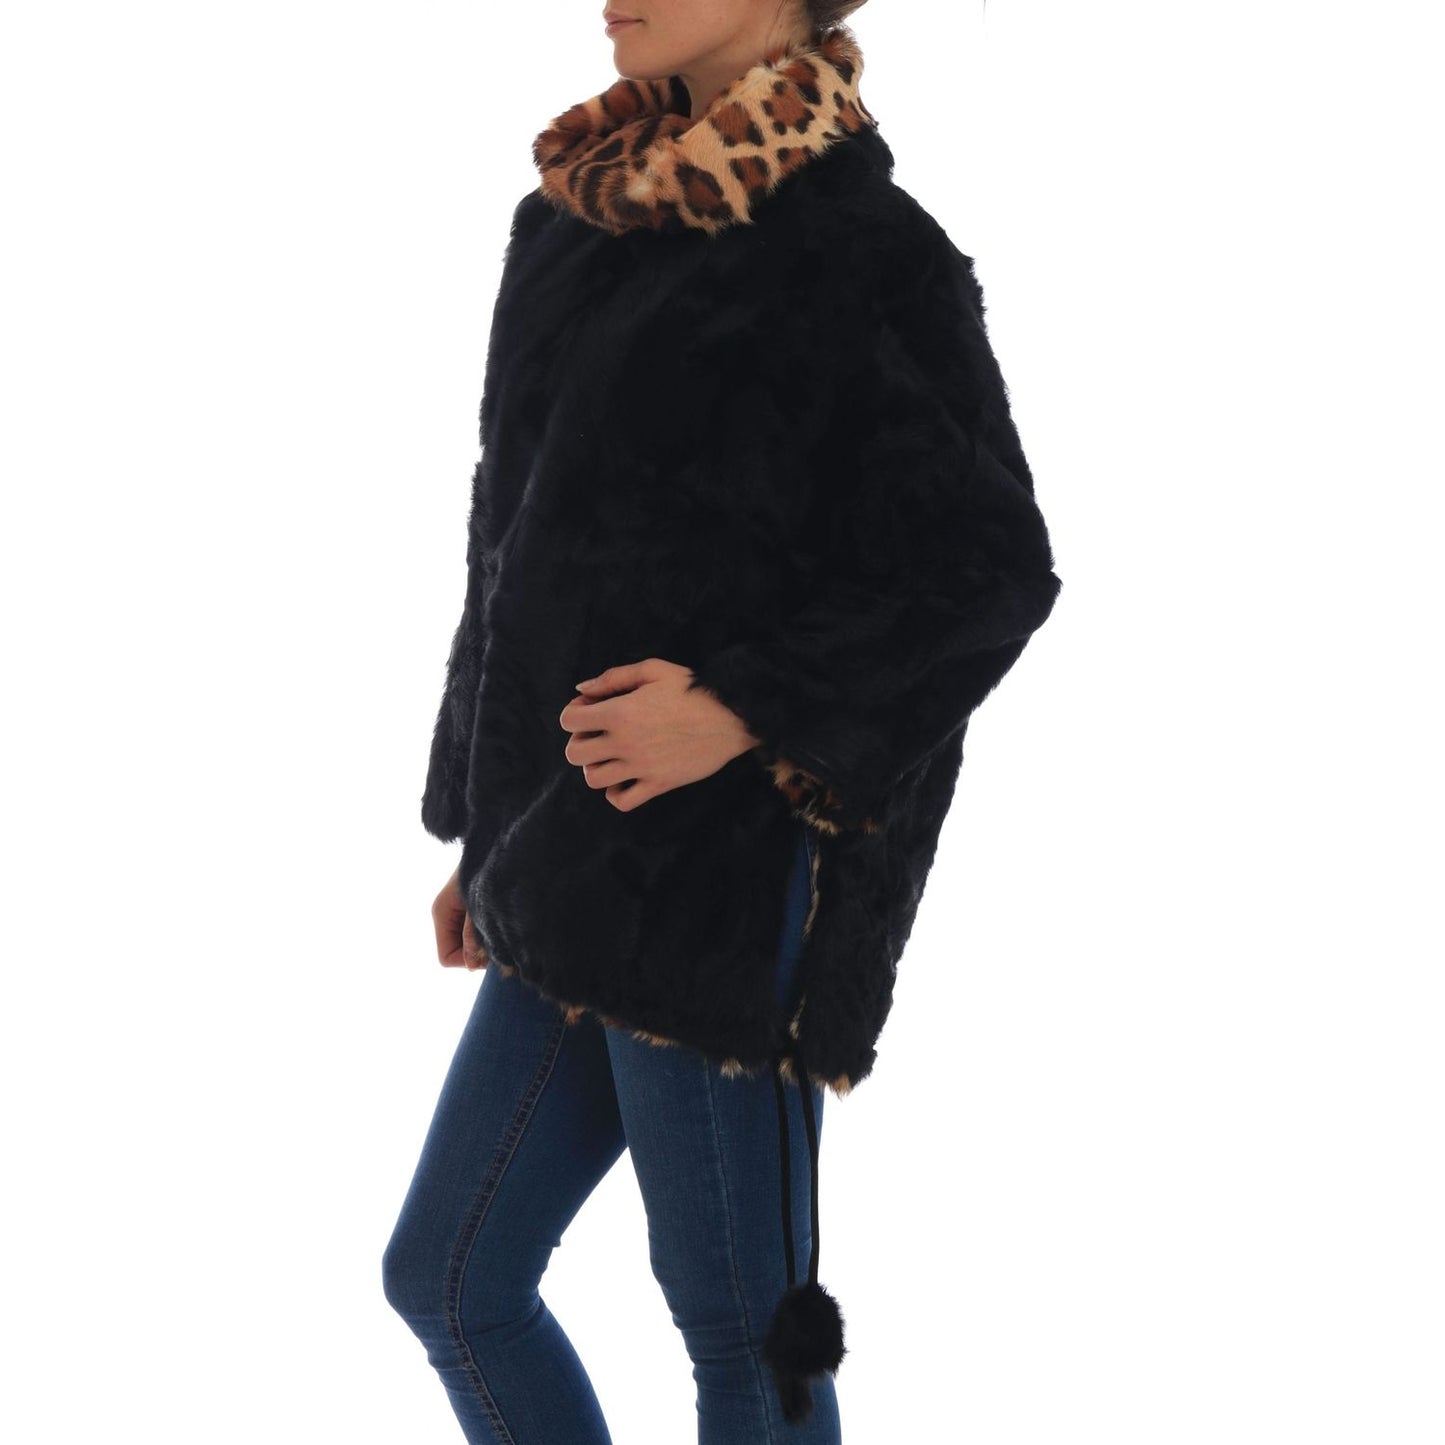 Dolce & Gabbana Elegant Black Lamb Fur Short Coat black-lamb-leopard-print-fur-coat-jacket 654682-black-lamb-leopard-print-fur-coat-jacket-1.jpg